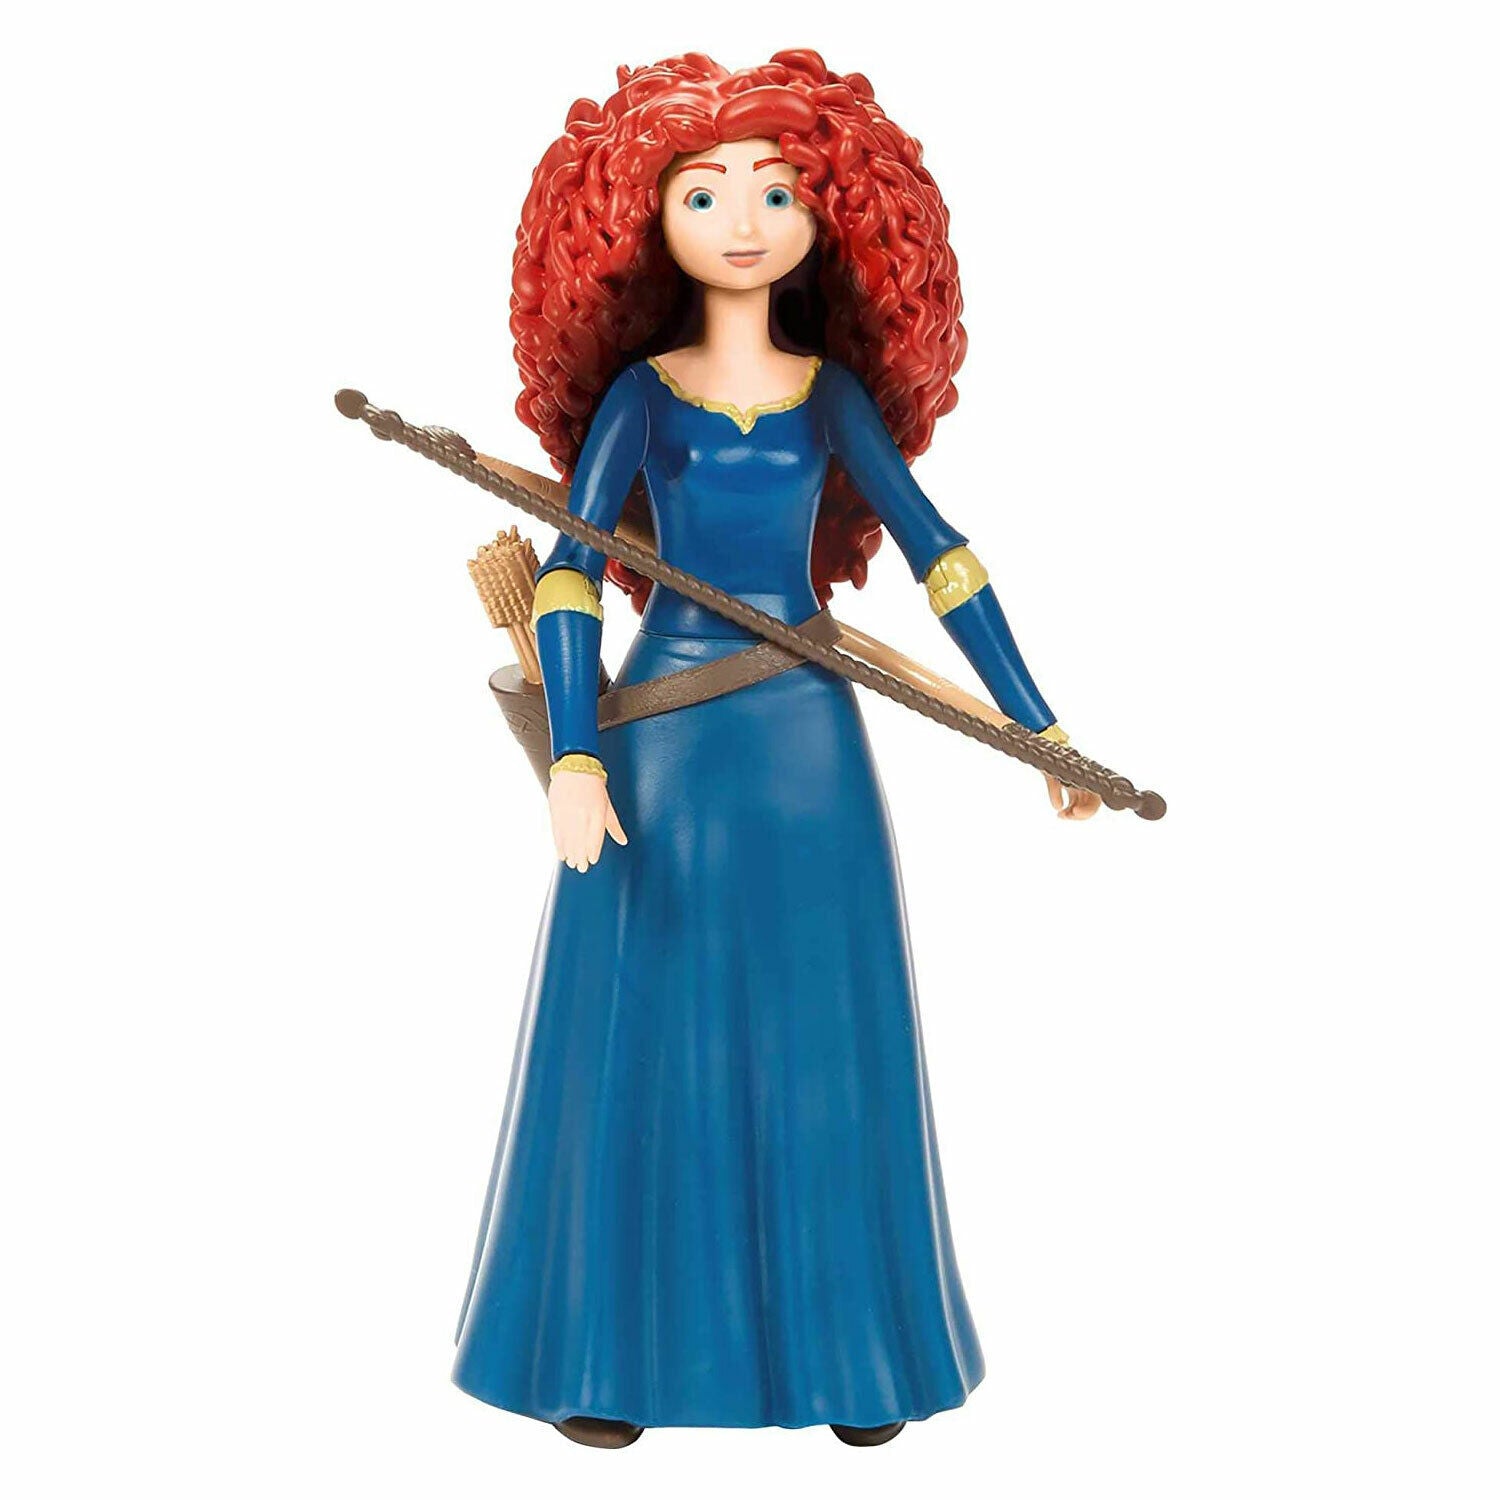 New Disney Pixar Brave Merida Action Figure - Collectible Toy